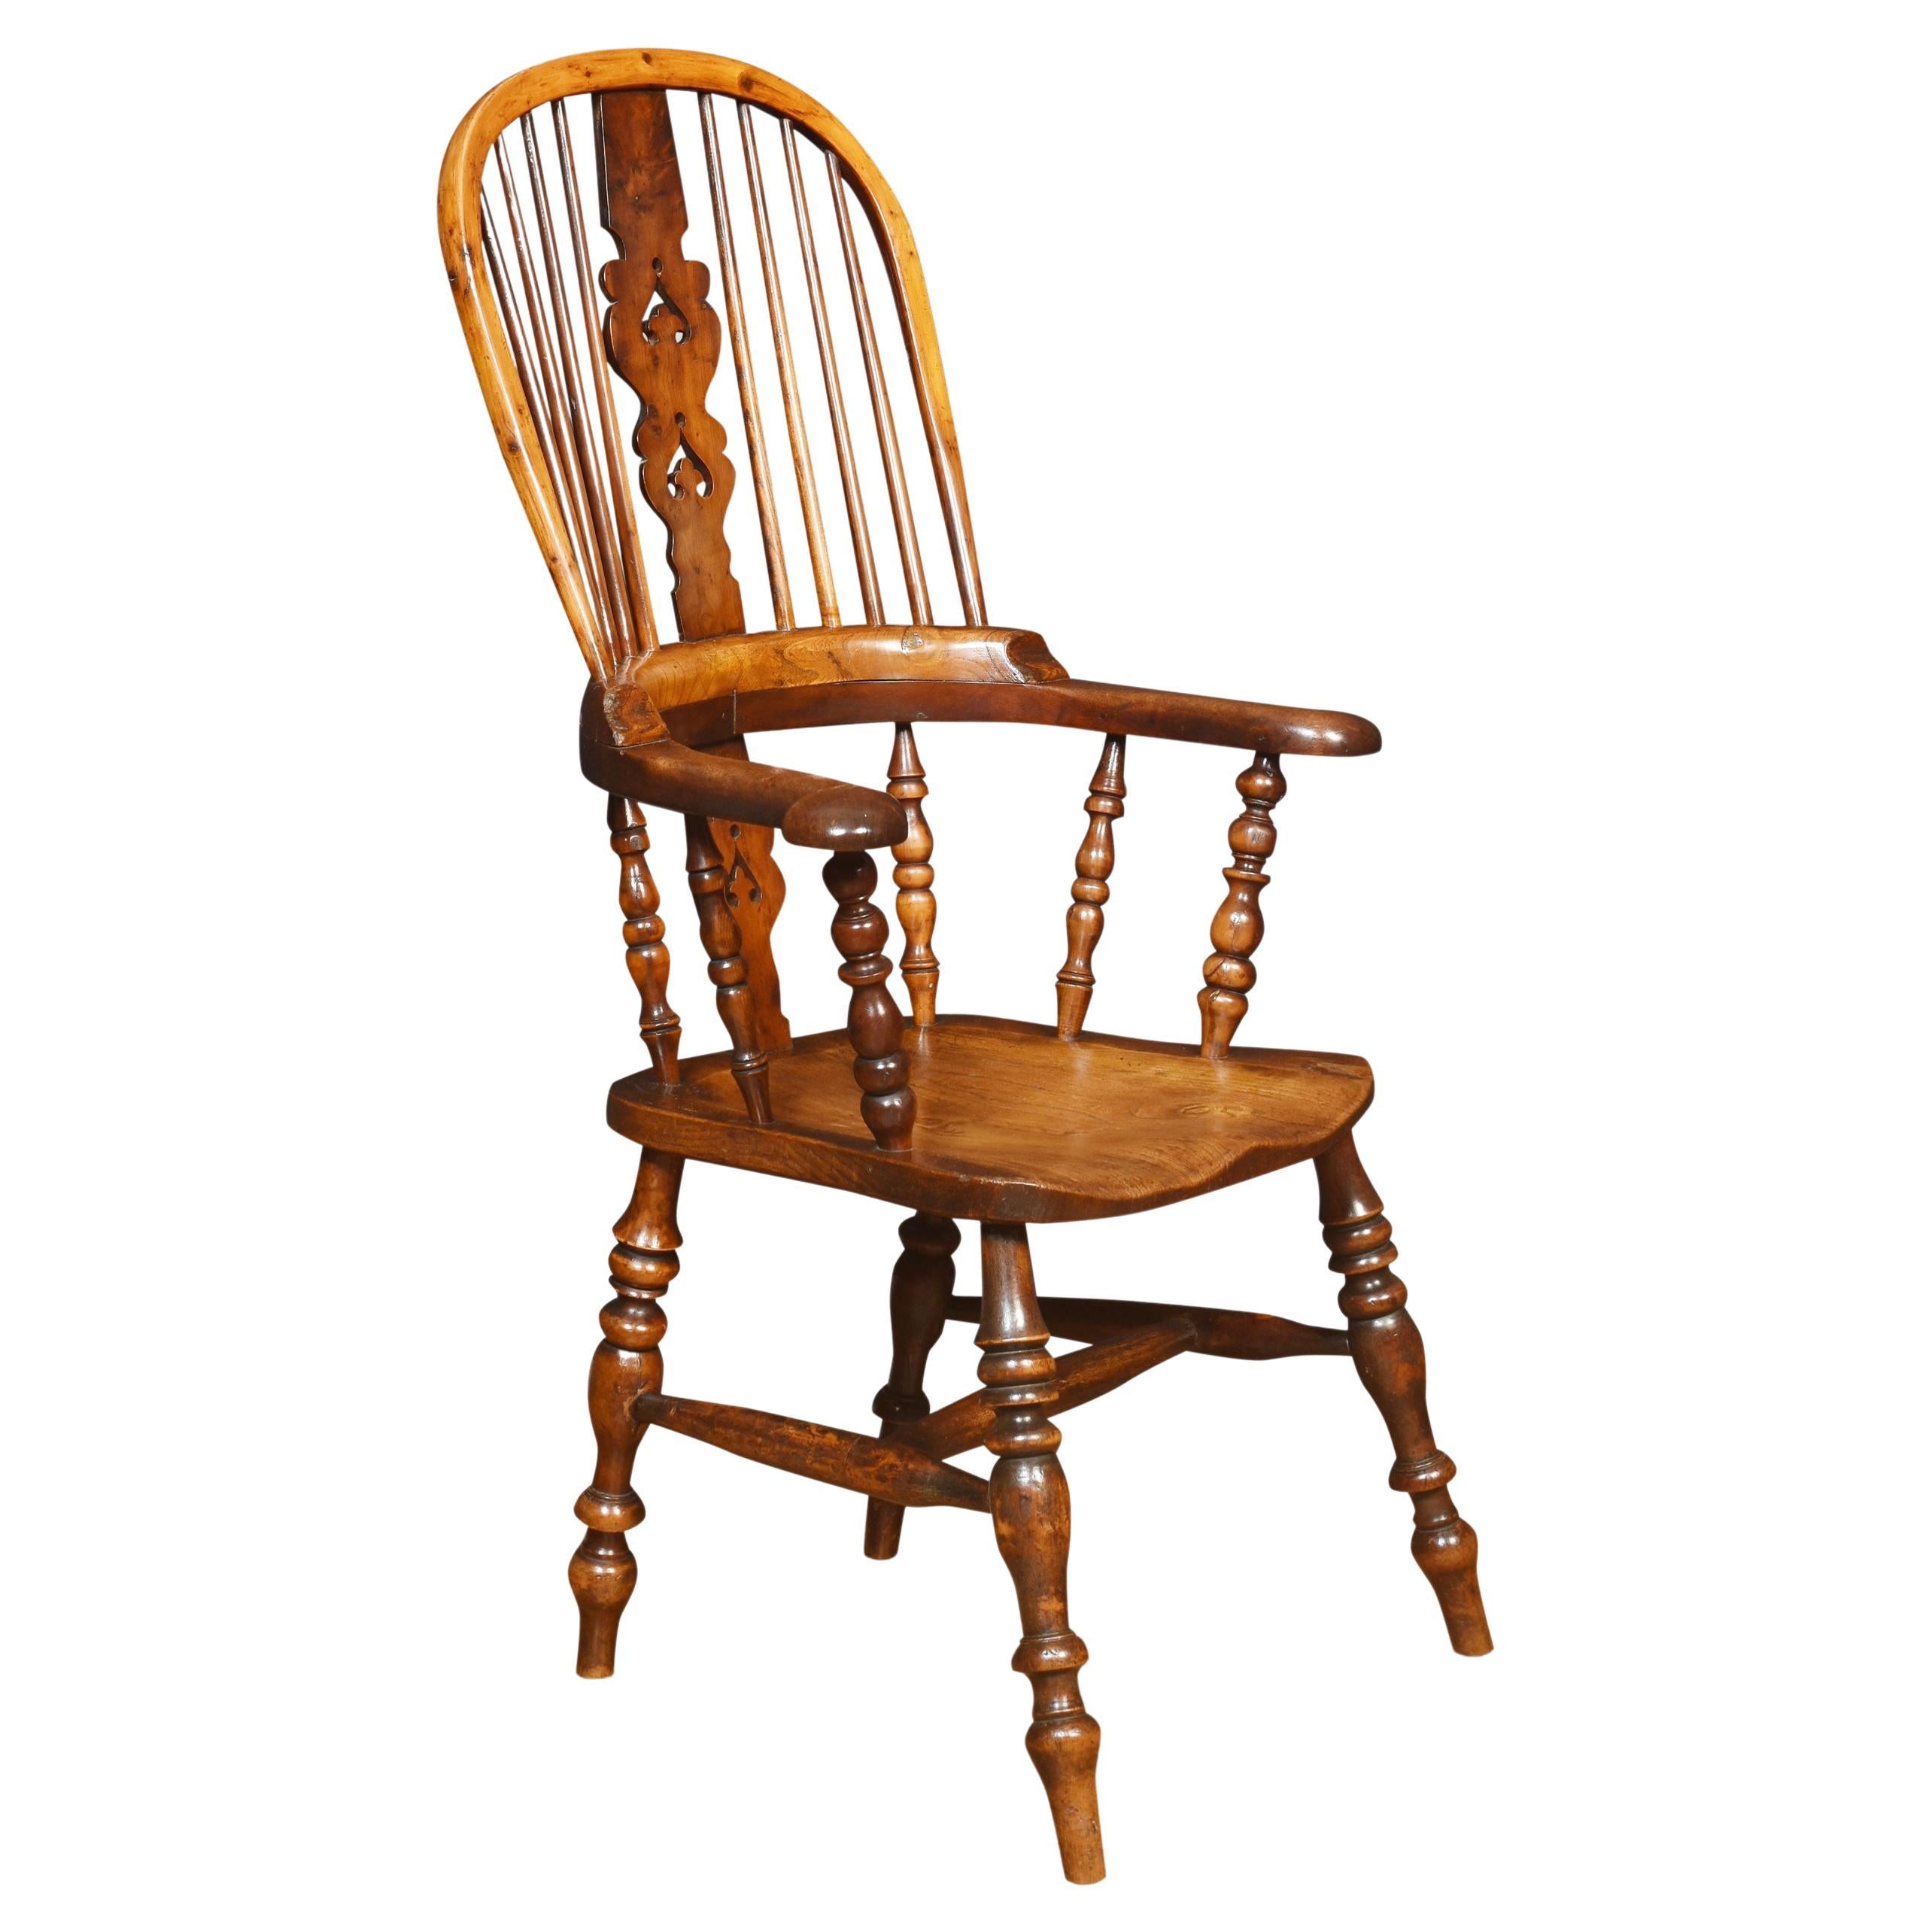 Yew wood Windsor armchair